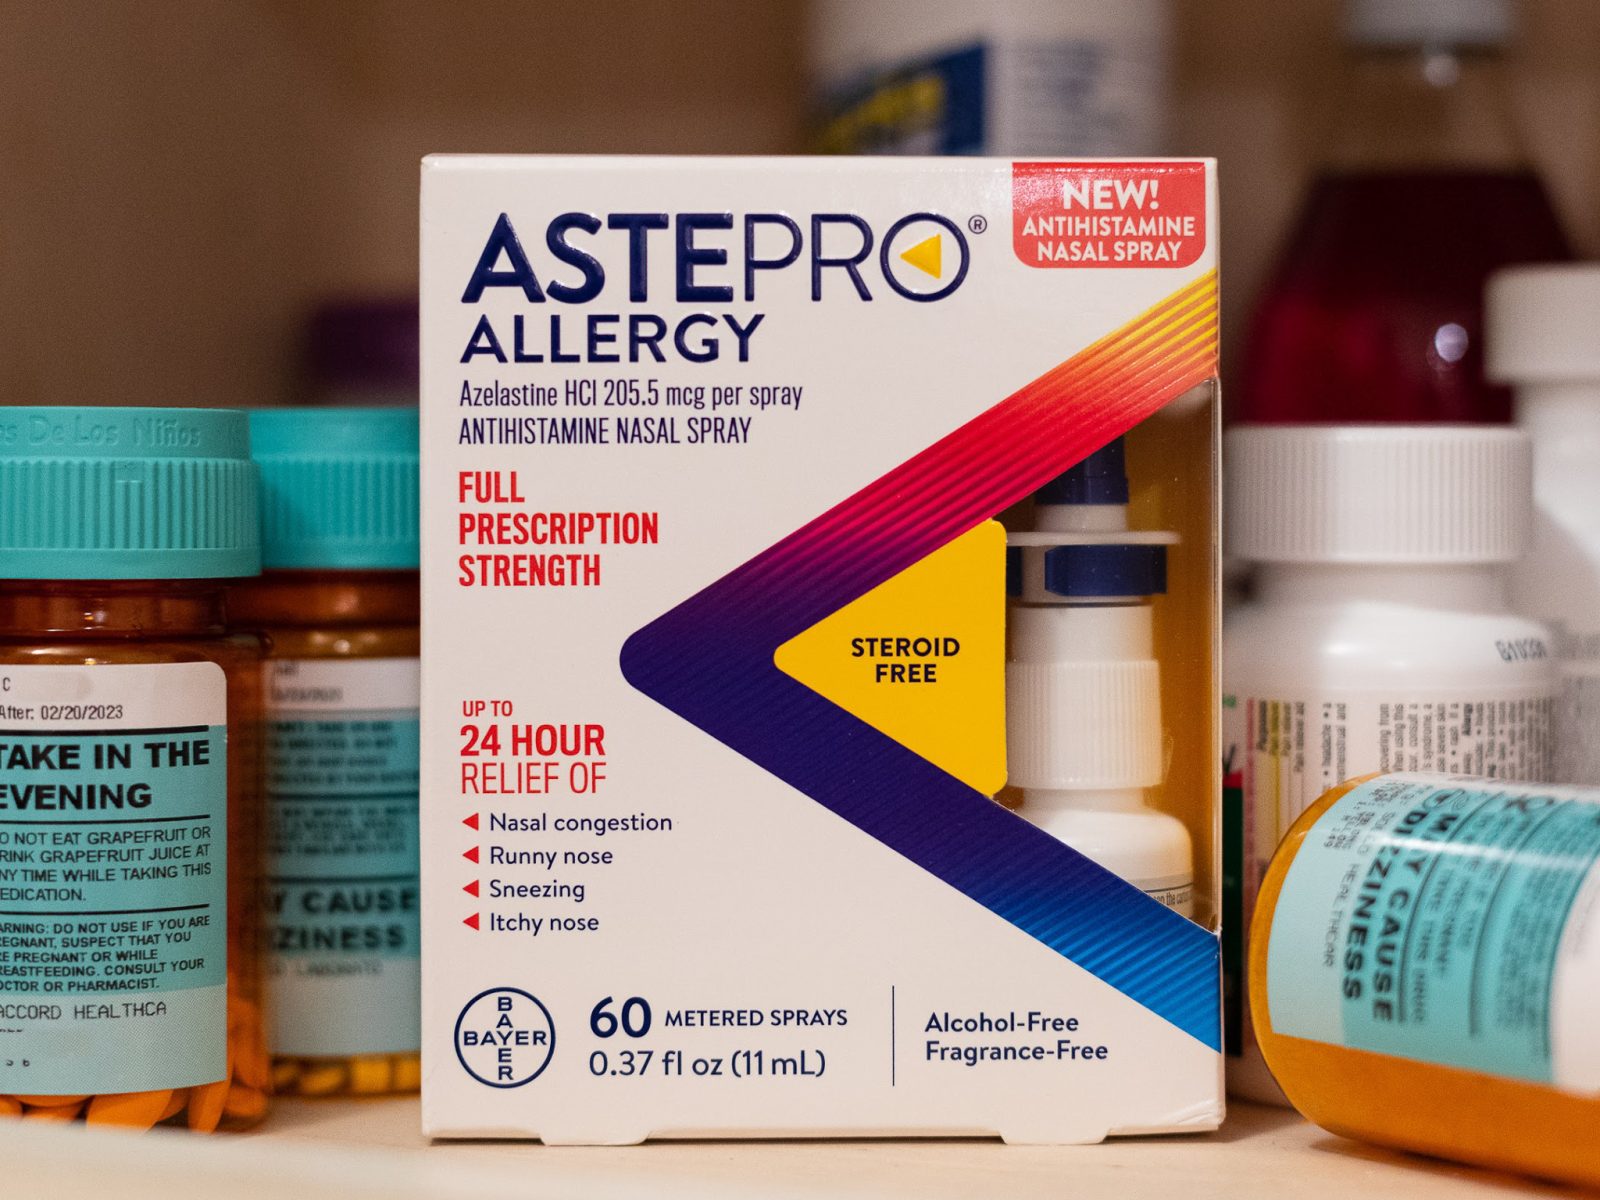 New AstePro Allergy Nasal Spray Just $9.99 At Kroger (Regular Price $17.99)